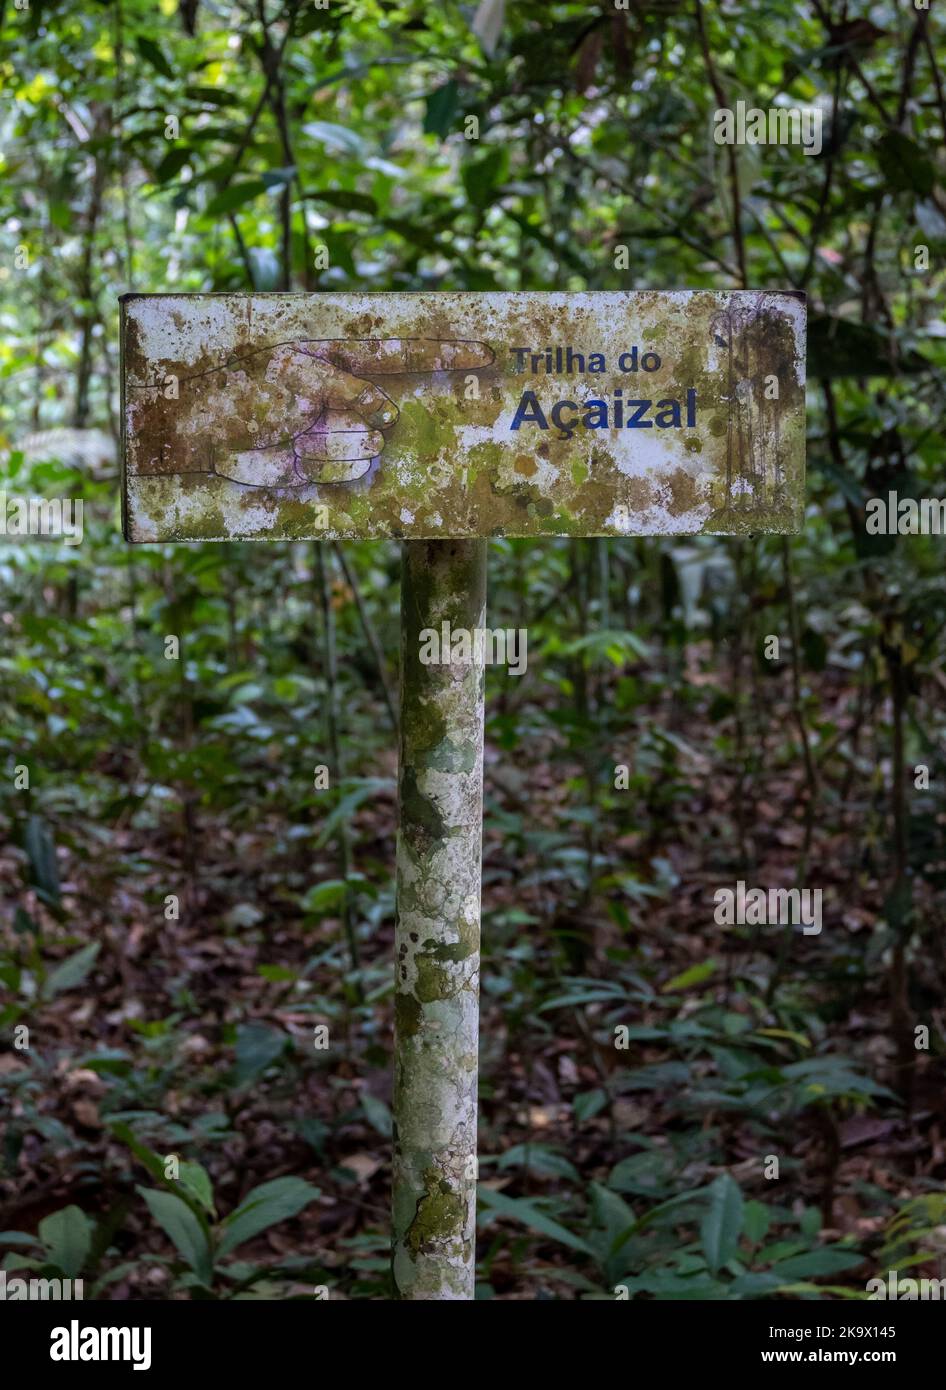 Wegweiser im tropischen Wald. Amazonia National Park, Pará, Brasilien. Stockfoto